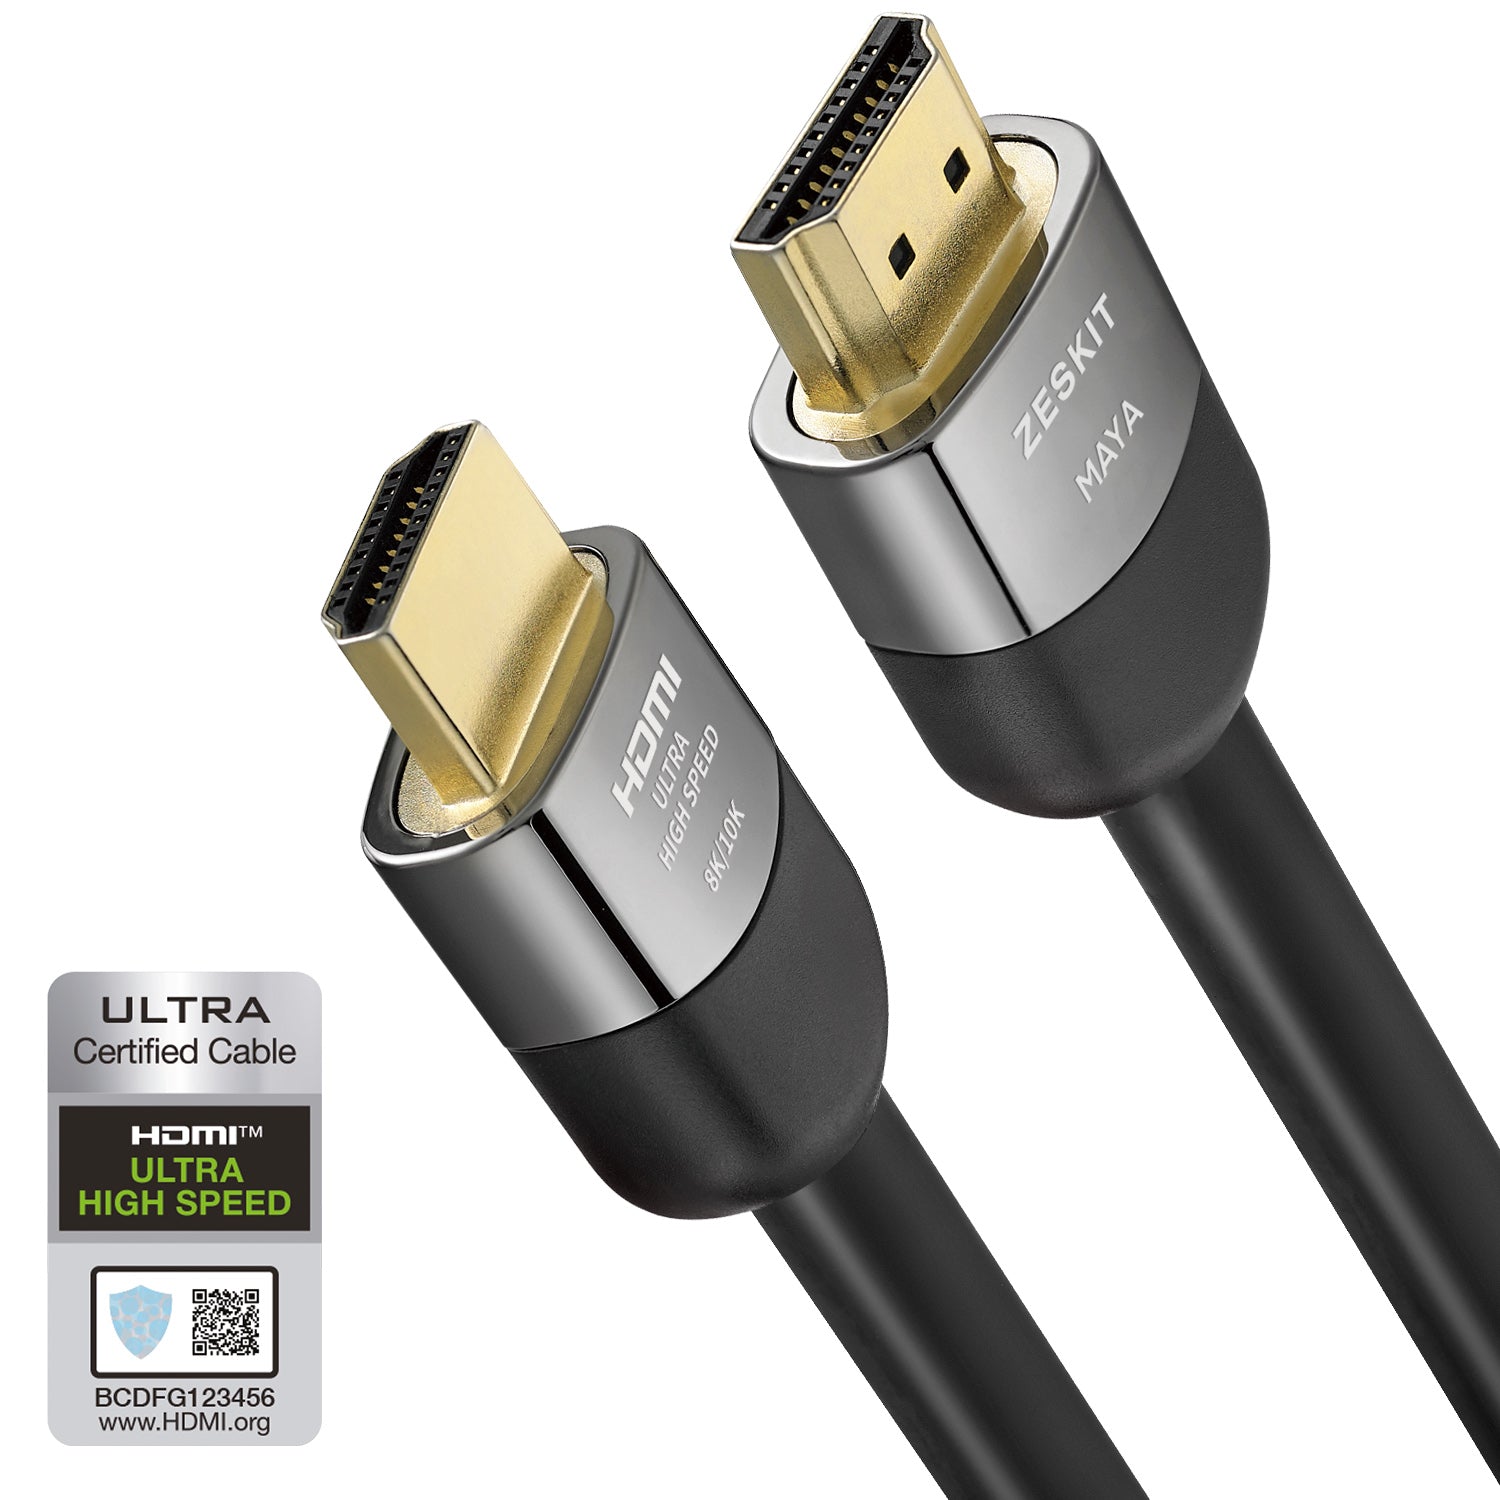 joggen Ciro inhalen Zeskit MAYA™ Ultra High Speed HDMI Cable – Zeskit Shop